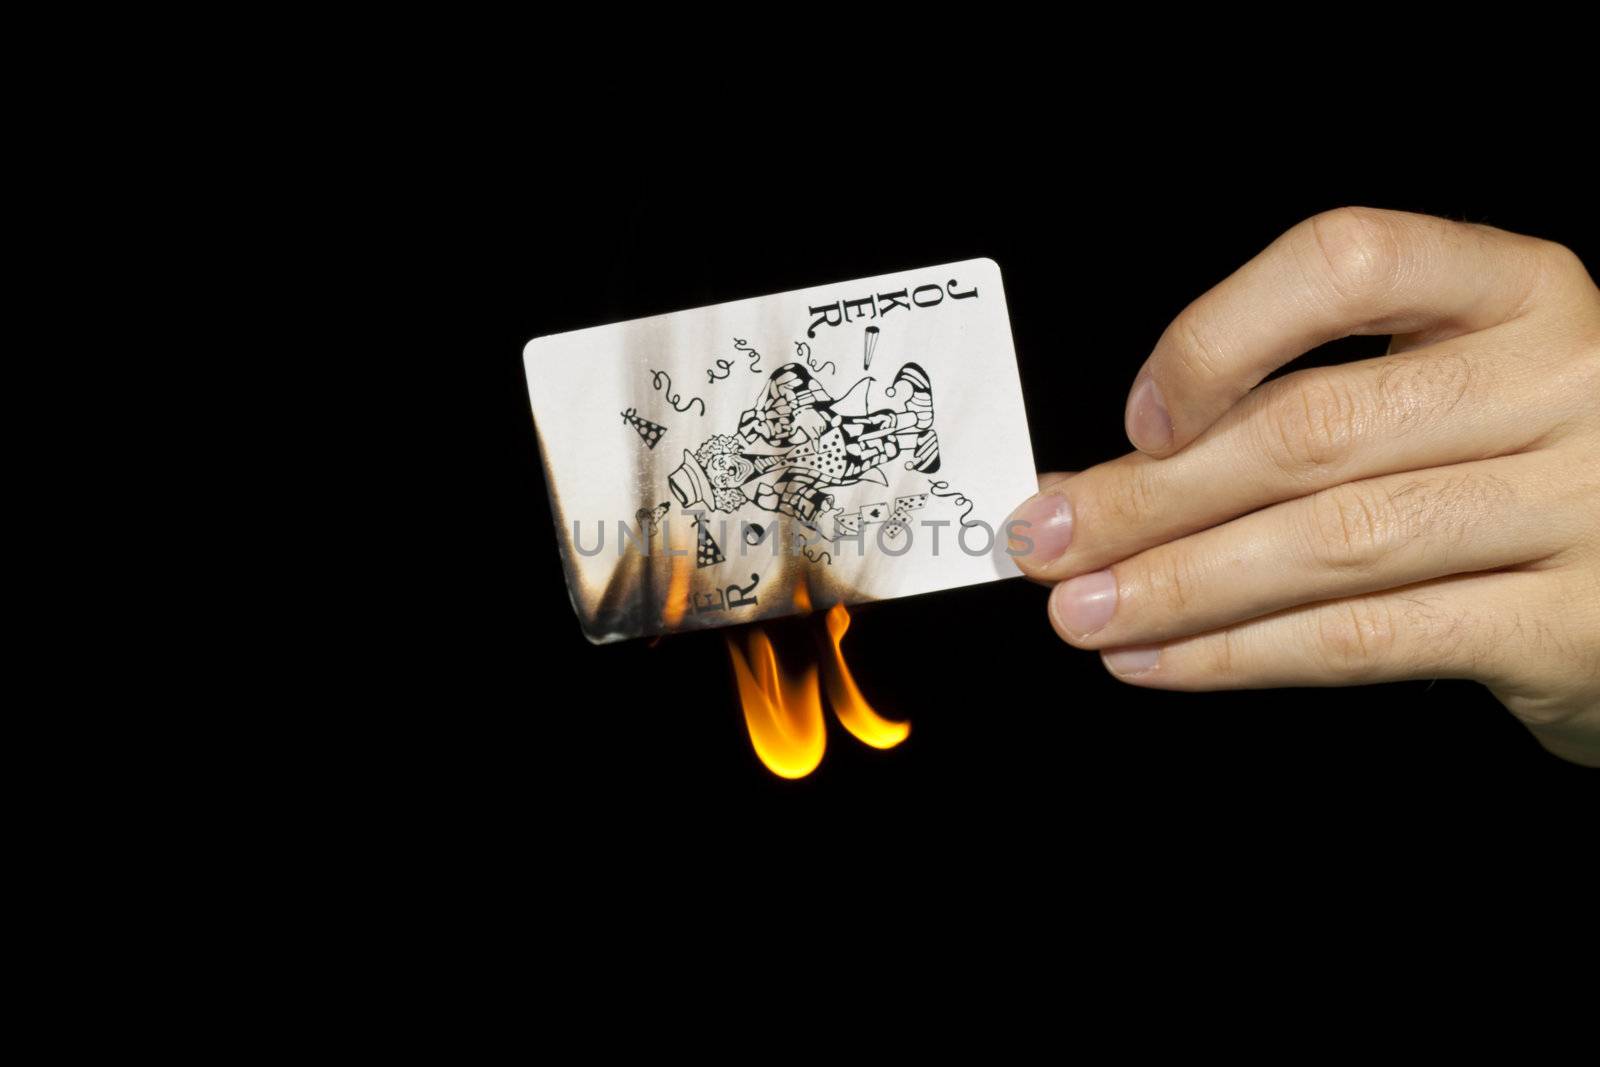 A man burns a joker card.